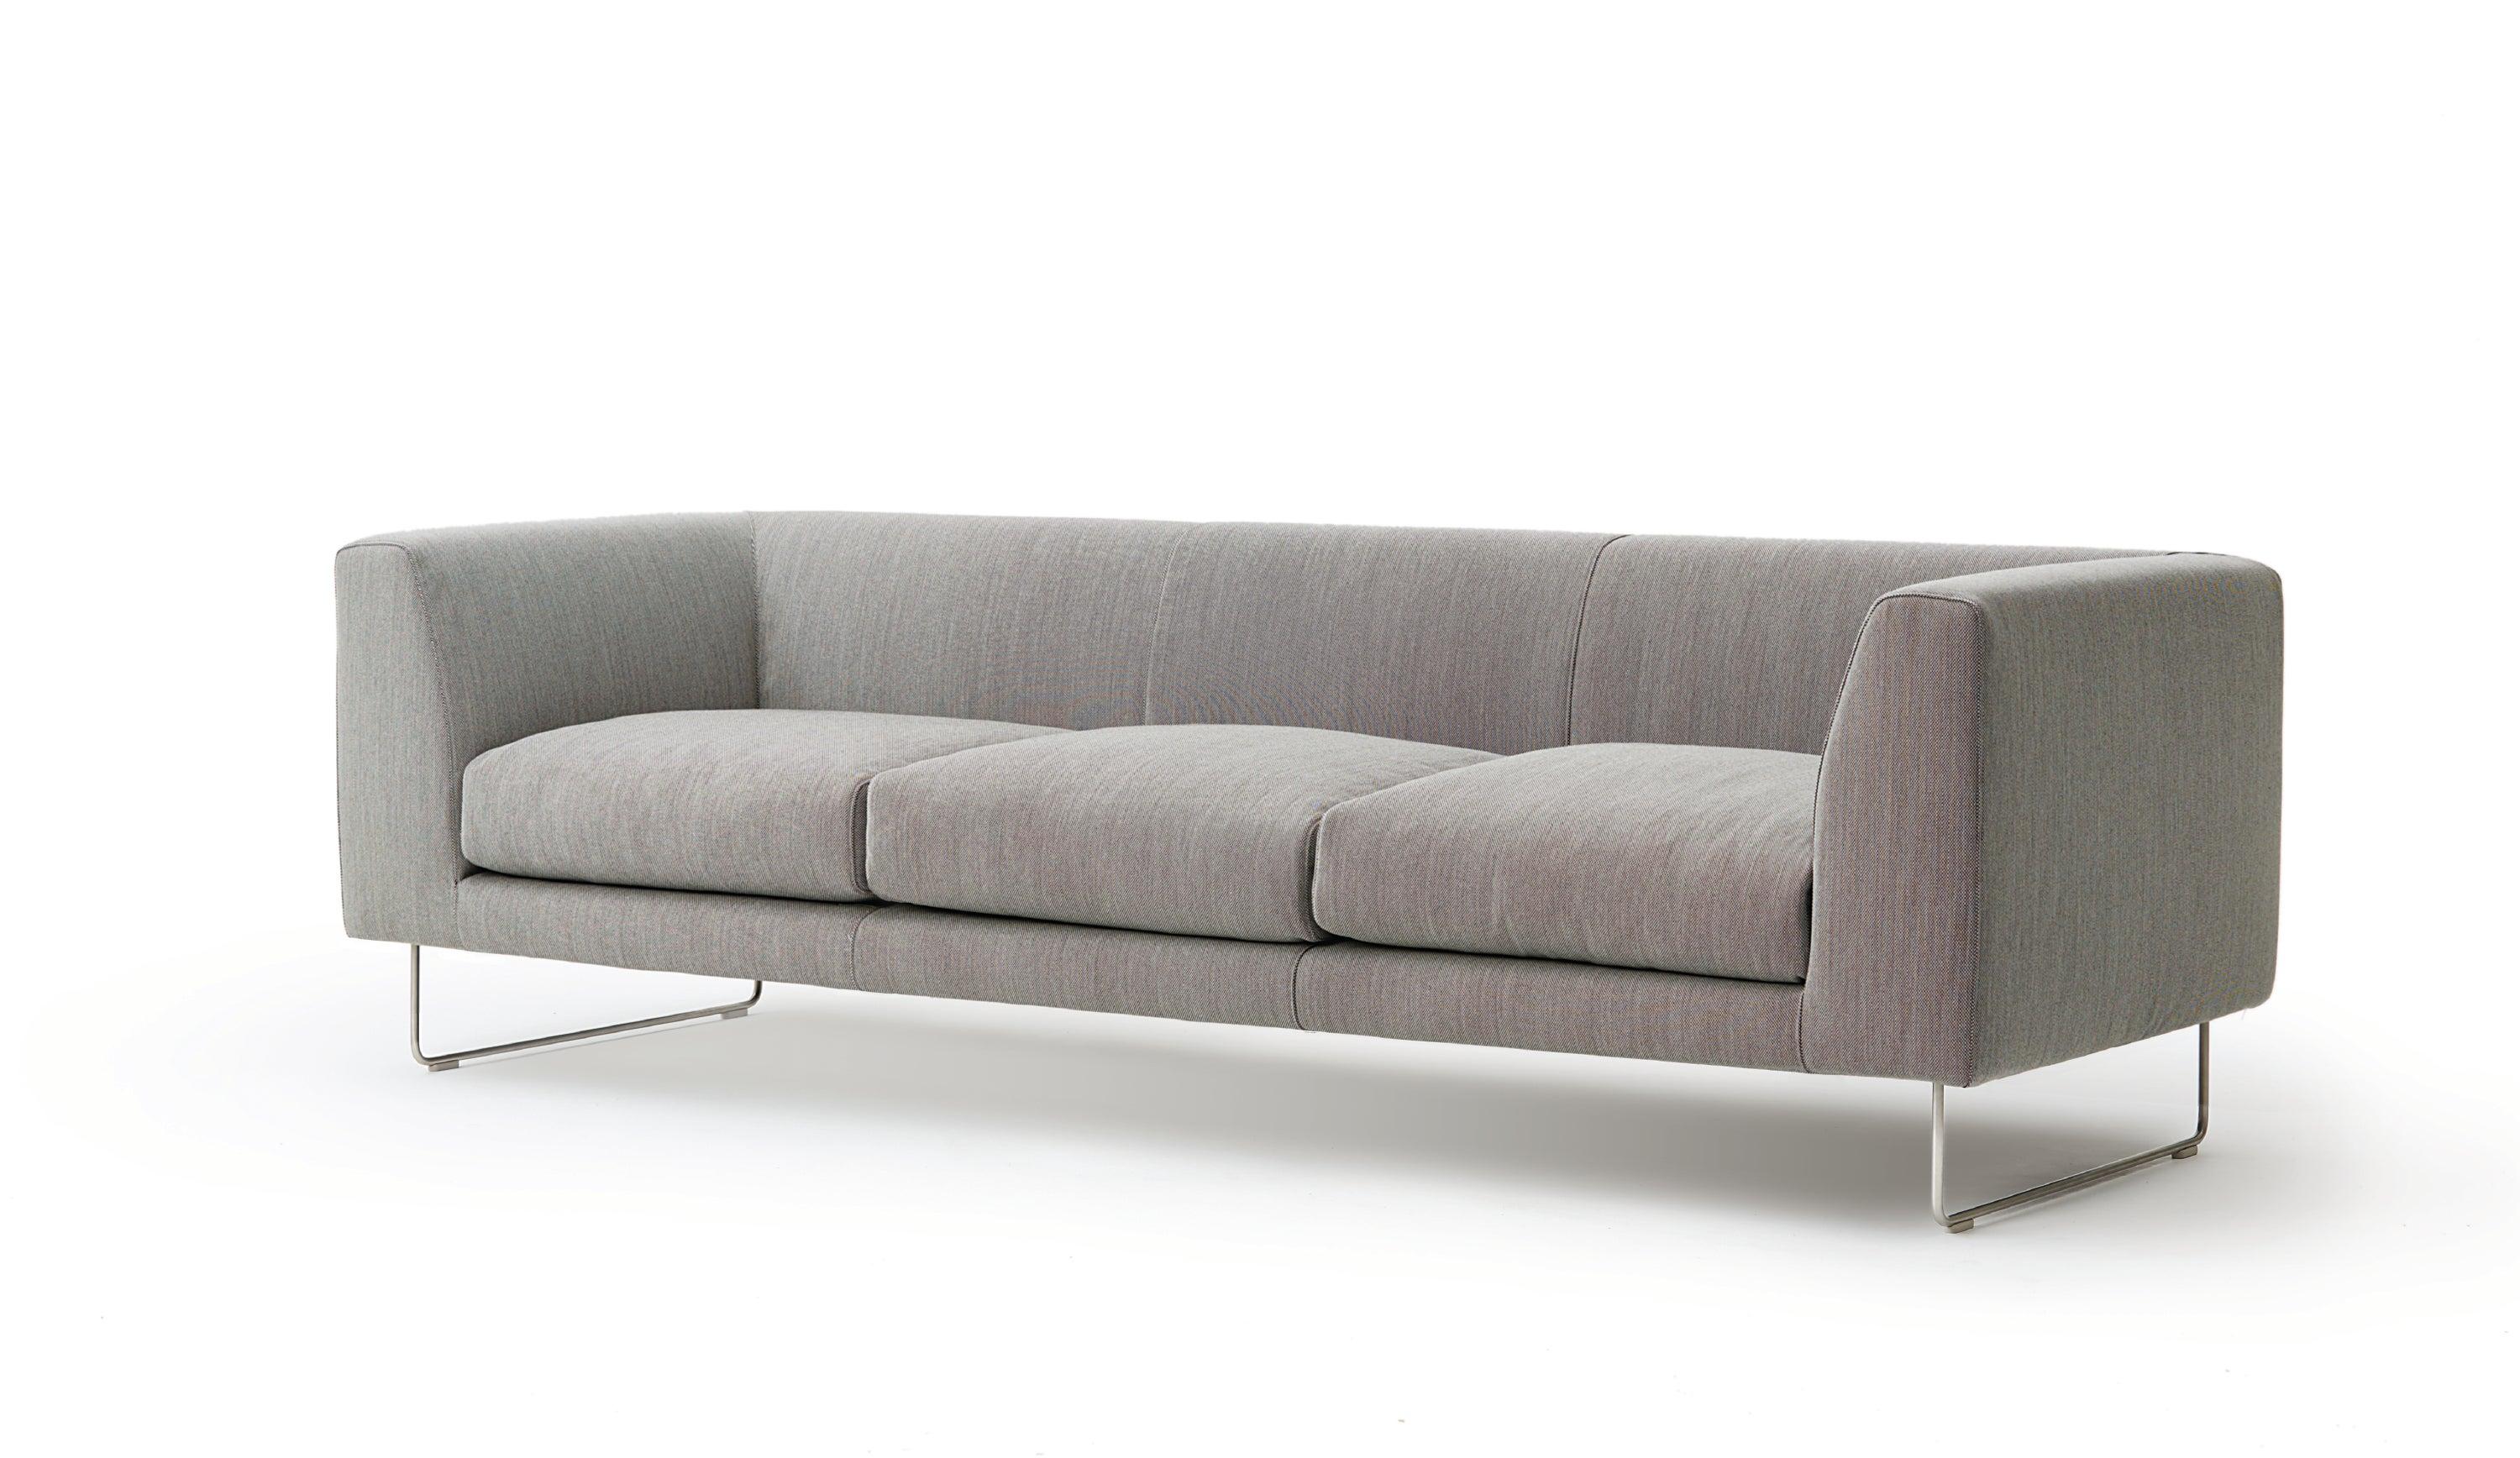 Das Sofa Elan ist ein unaufhaltsamer kommerzieller Erfolg und beeindruckt weiterhin. Die 1999 von Jasper Morrison entworfenen Elan-Sofas ruhen auf Paneelen aus mitteldichtem Konglomerat, massivem Tannenholz, Pappelsperrholz und Metalleinsätzen, die